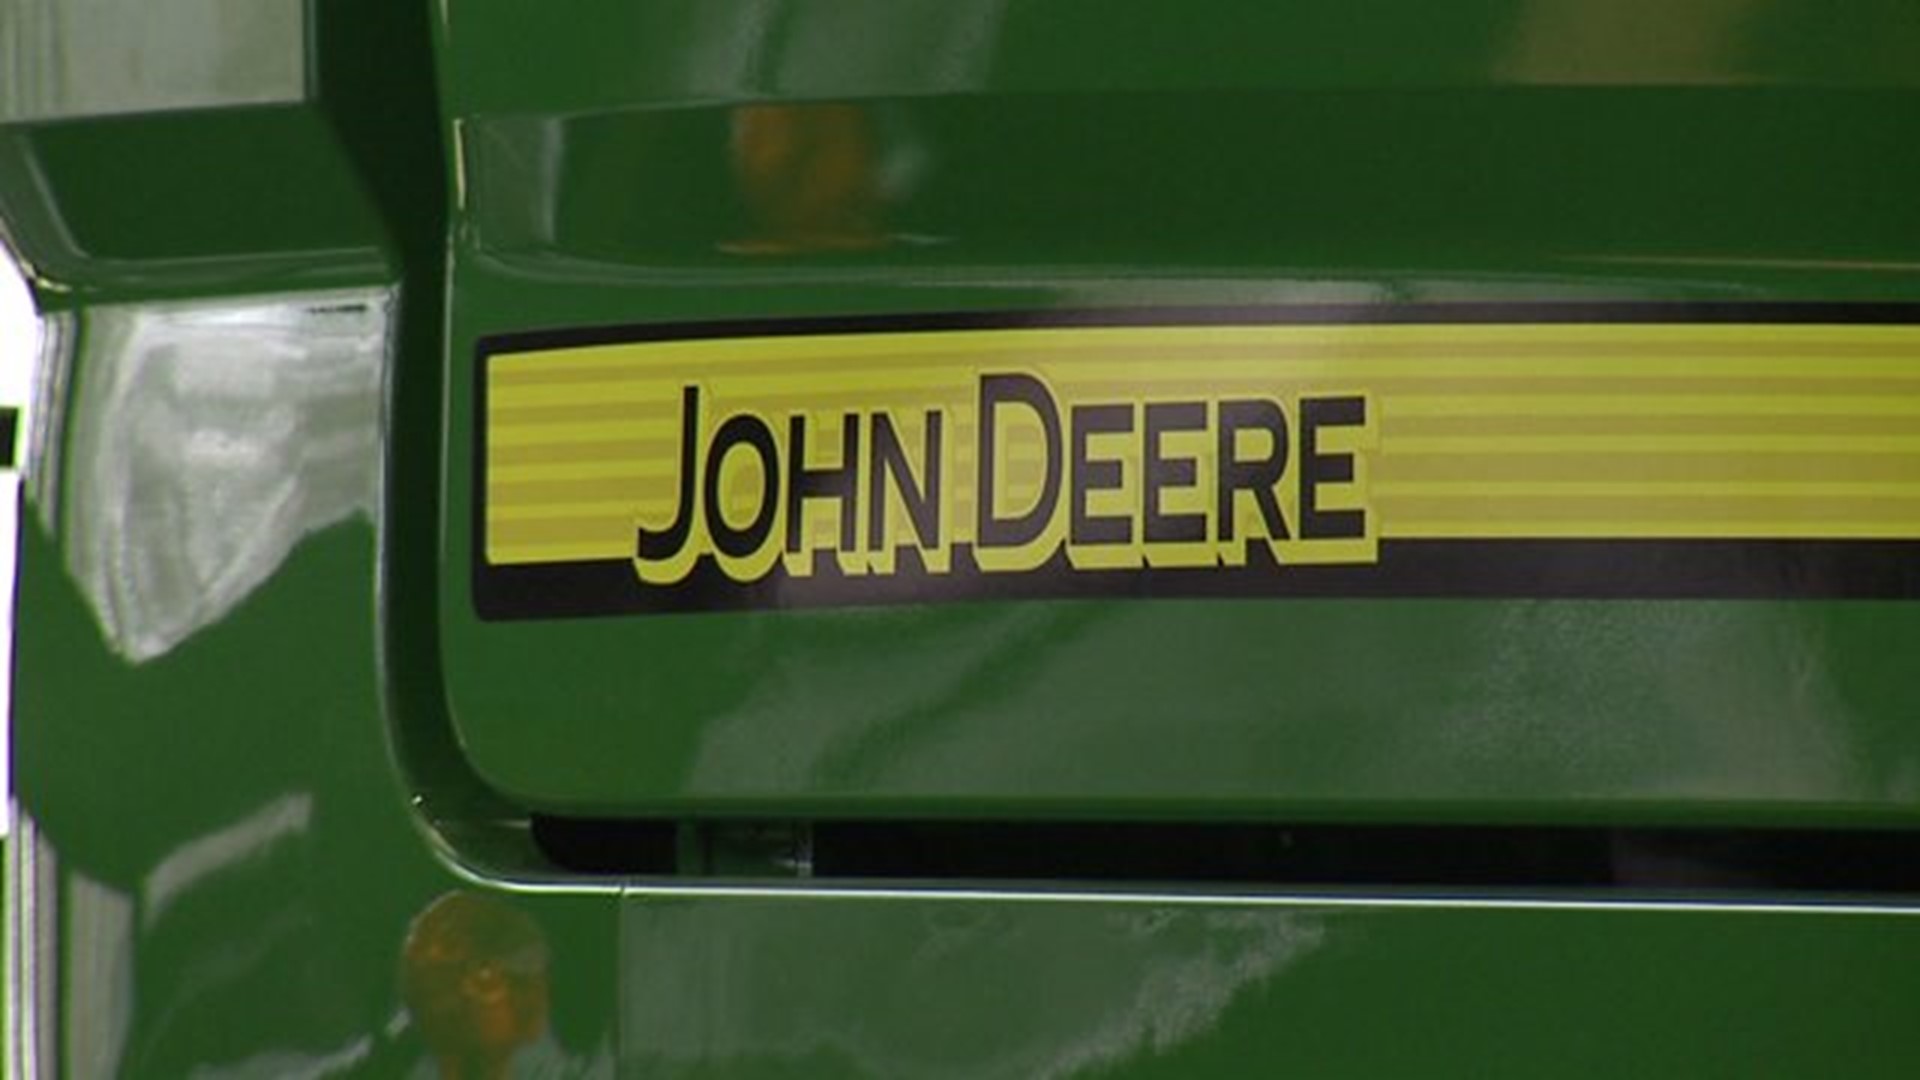 John Deere shareholders meeting